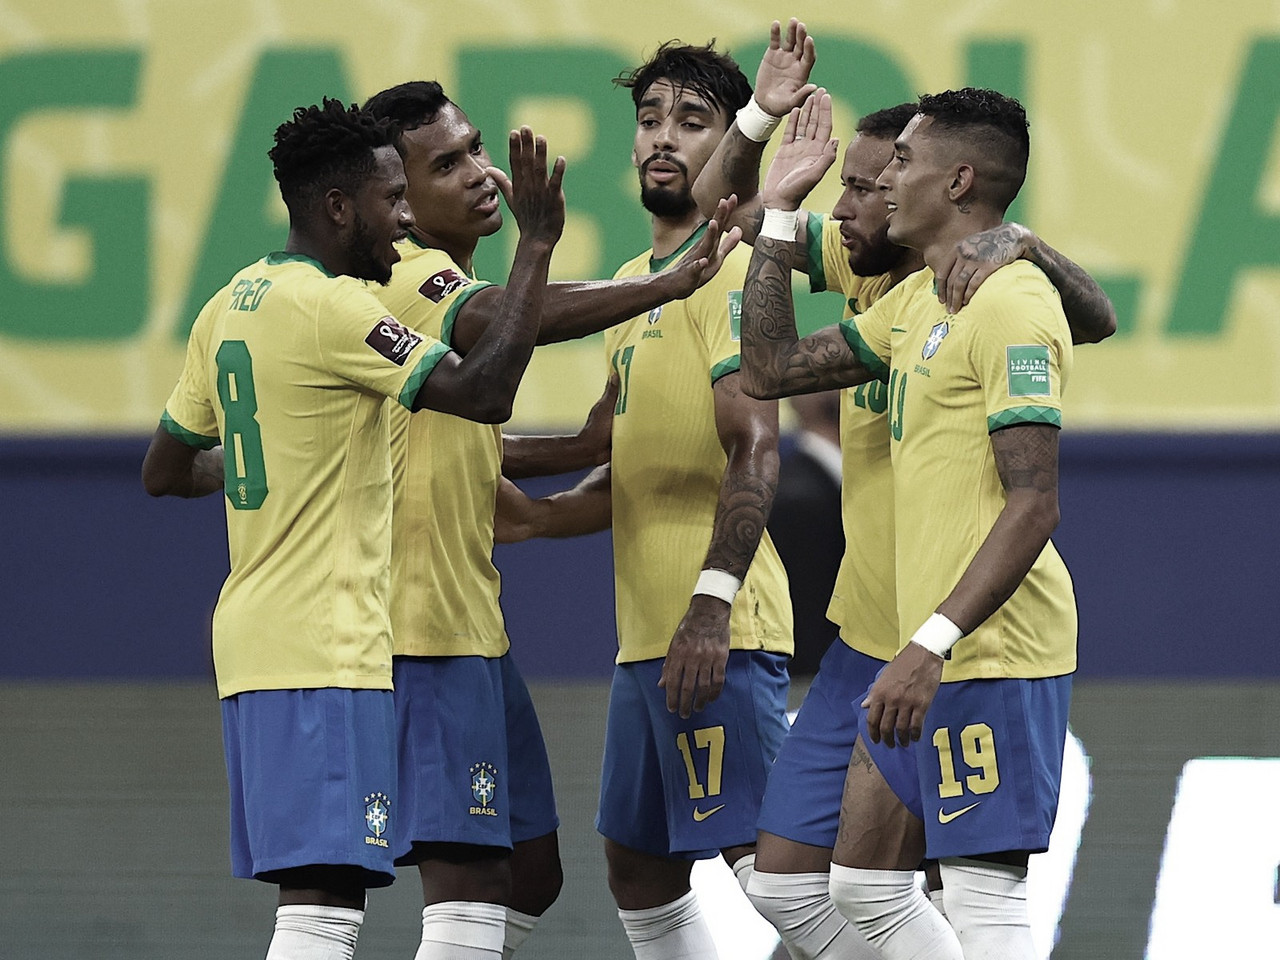 Brasil aplastó a Uruguay